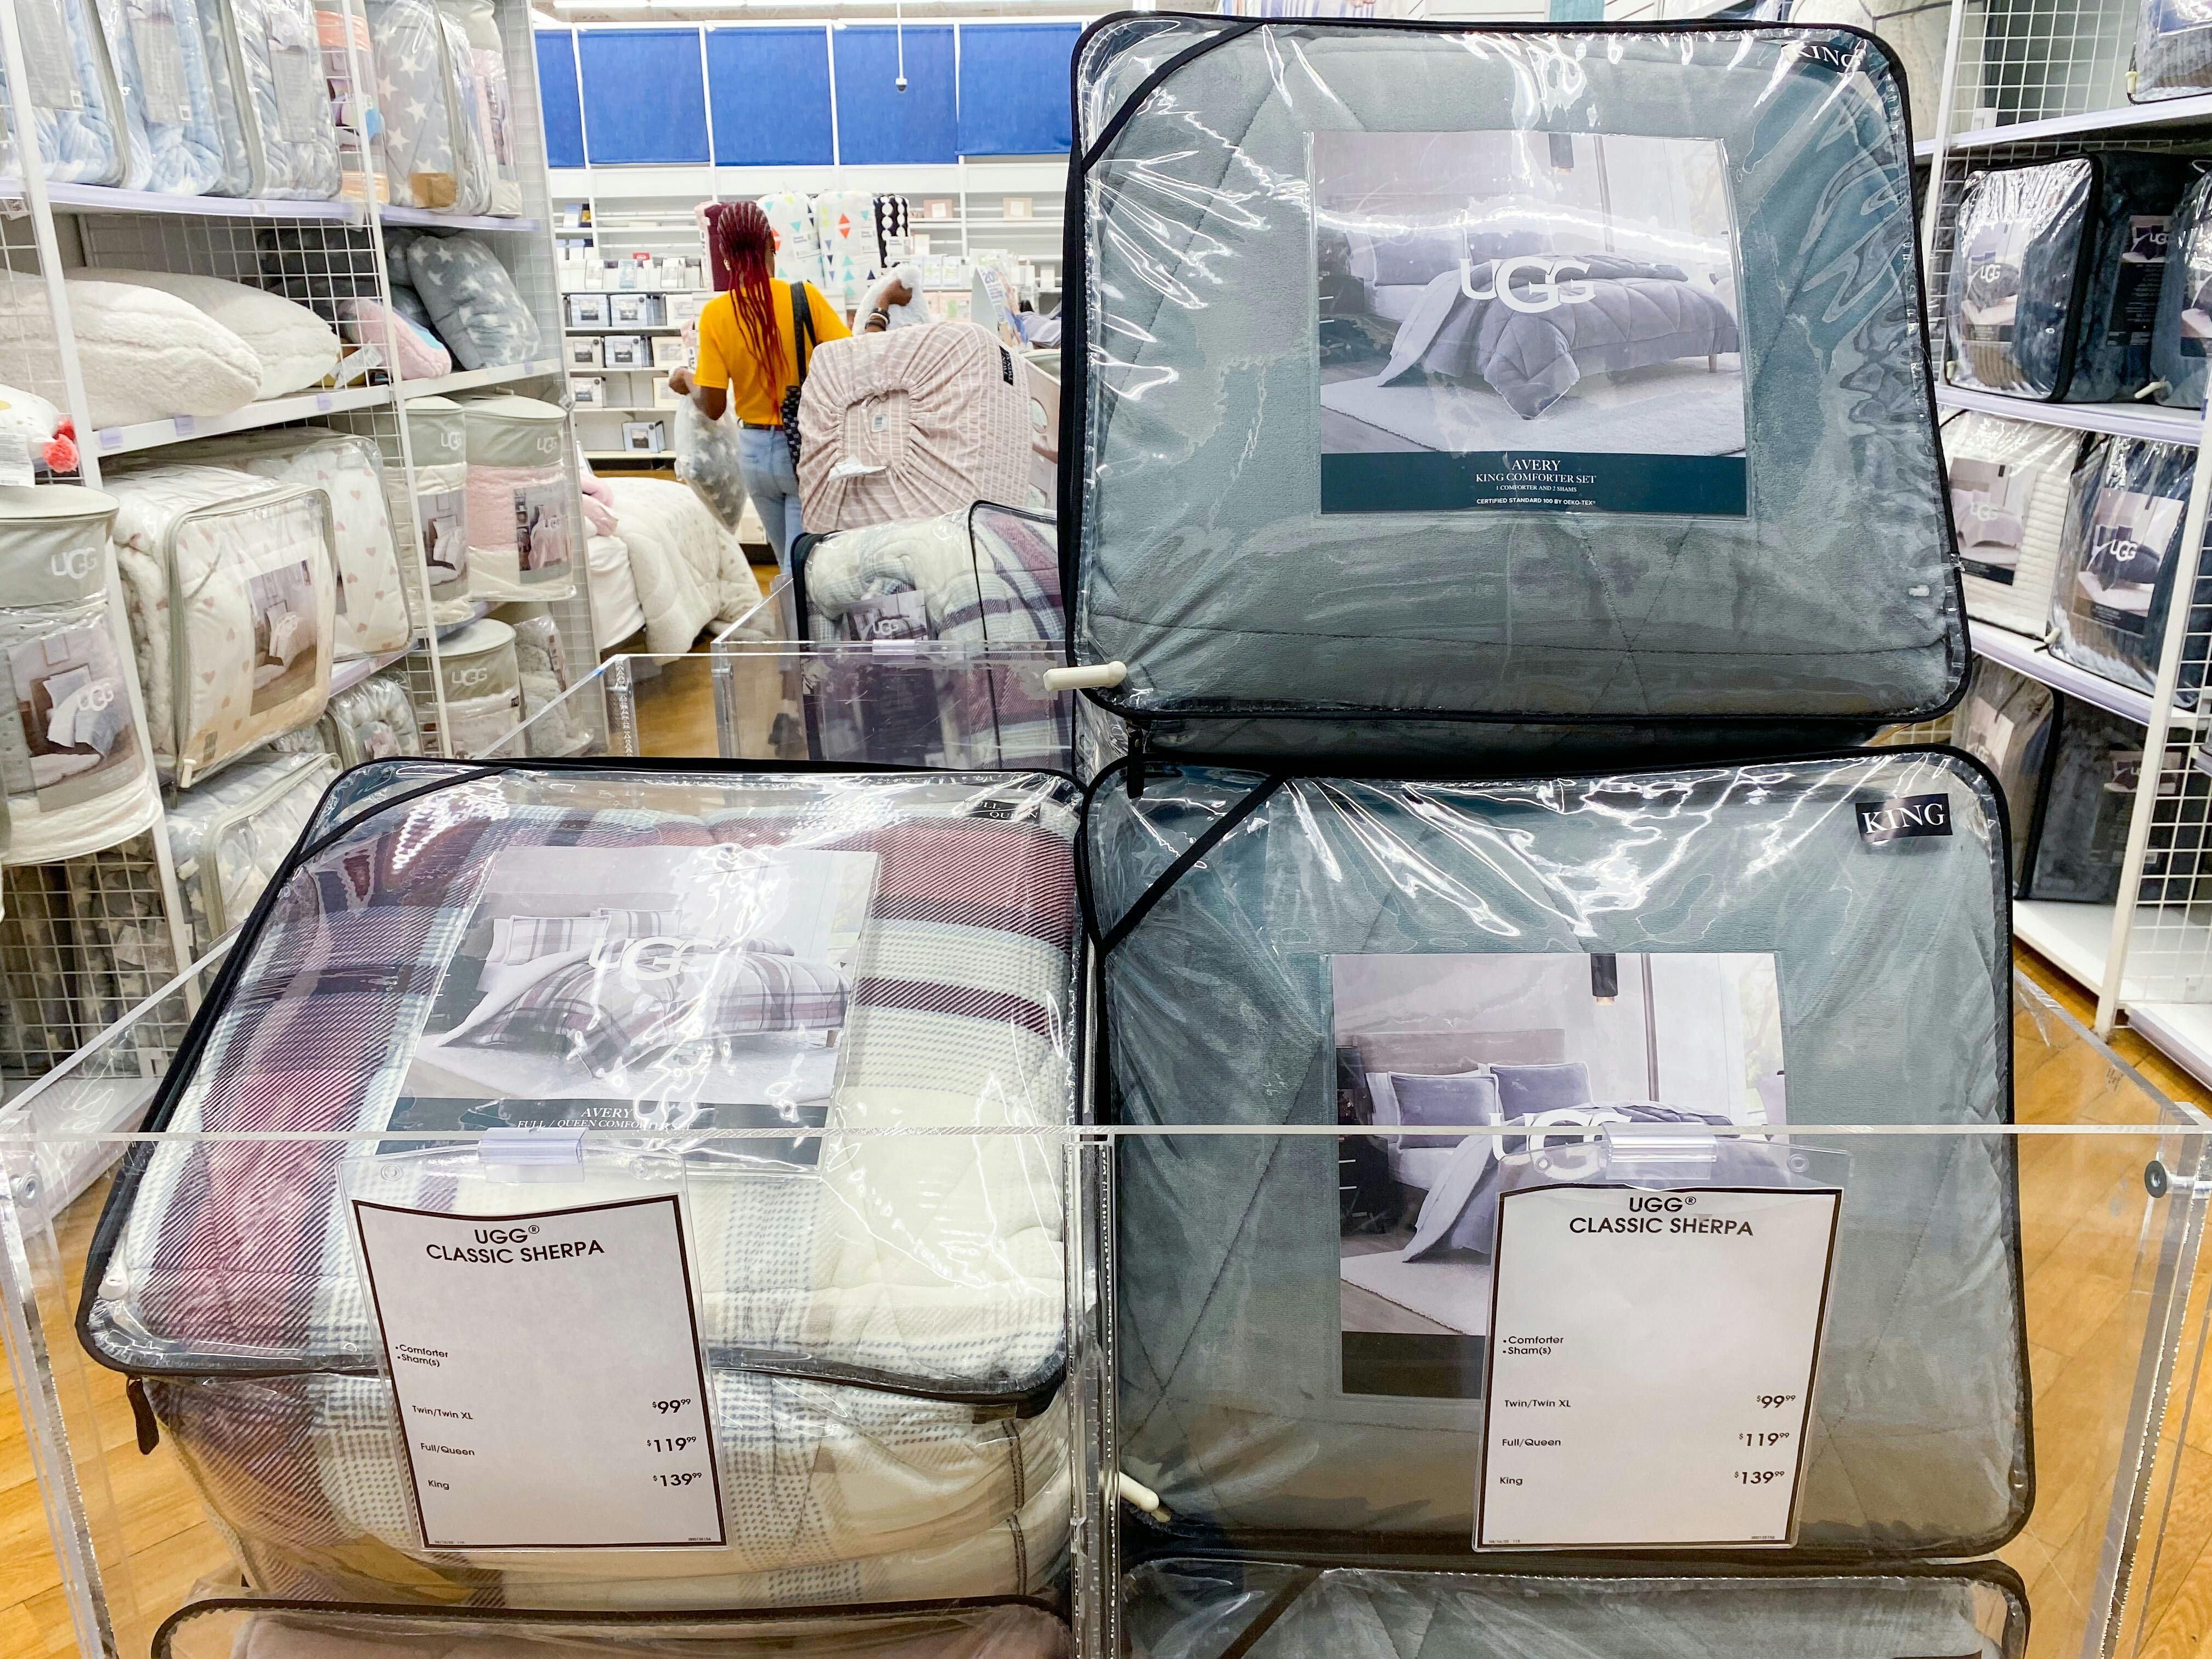 UGG comforter sets in a bin